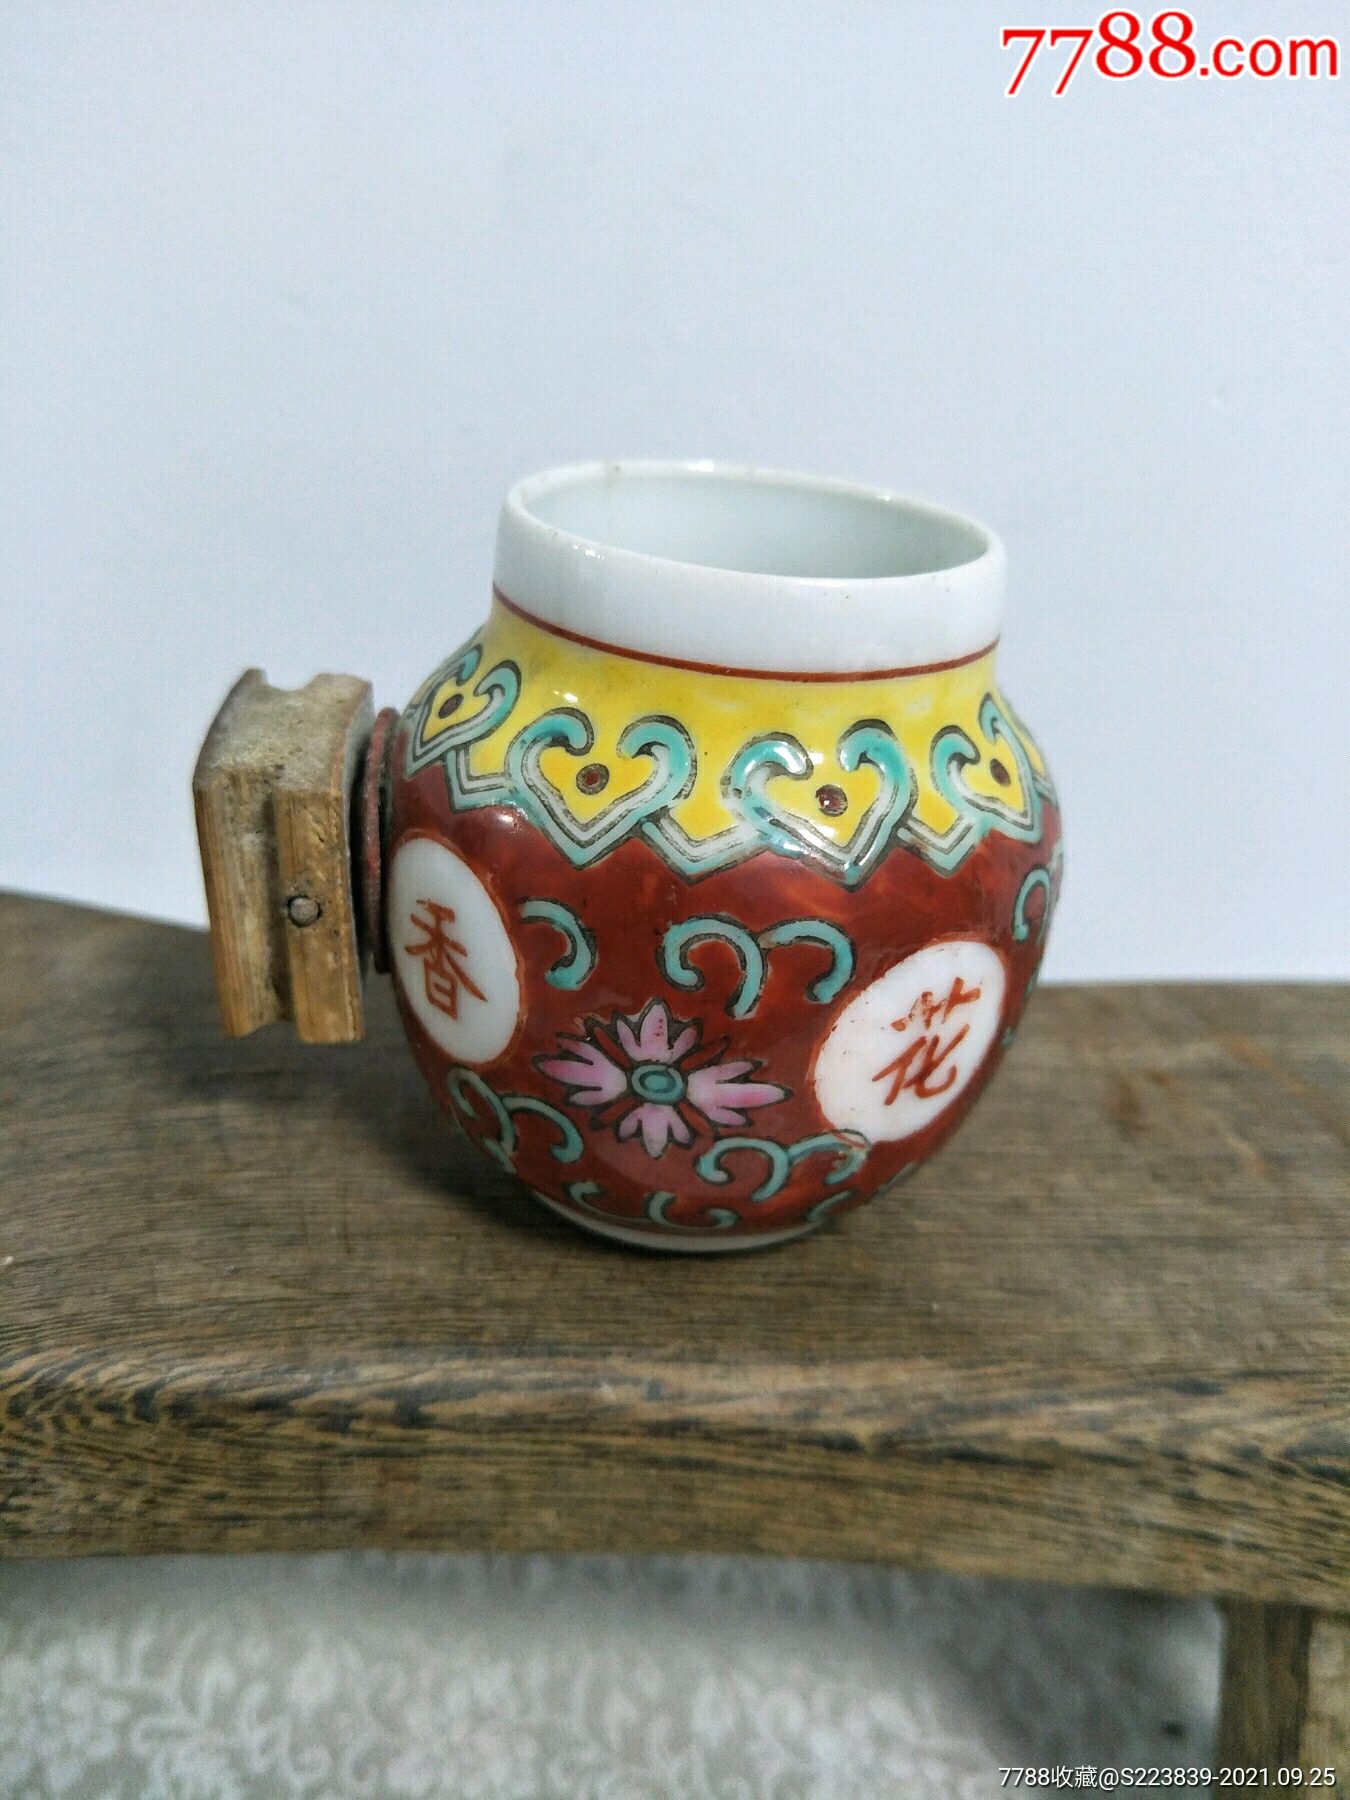 鸟语花香鸟食罐:乾隆年制,小瓷器